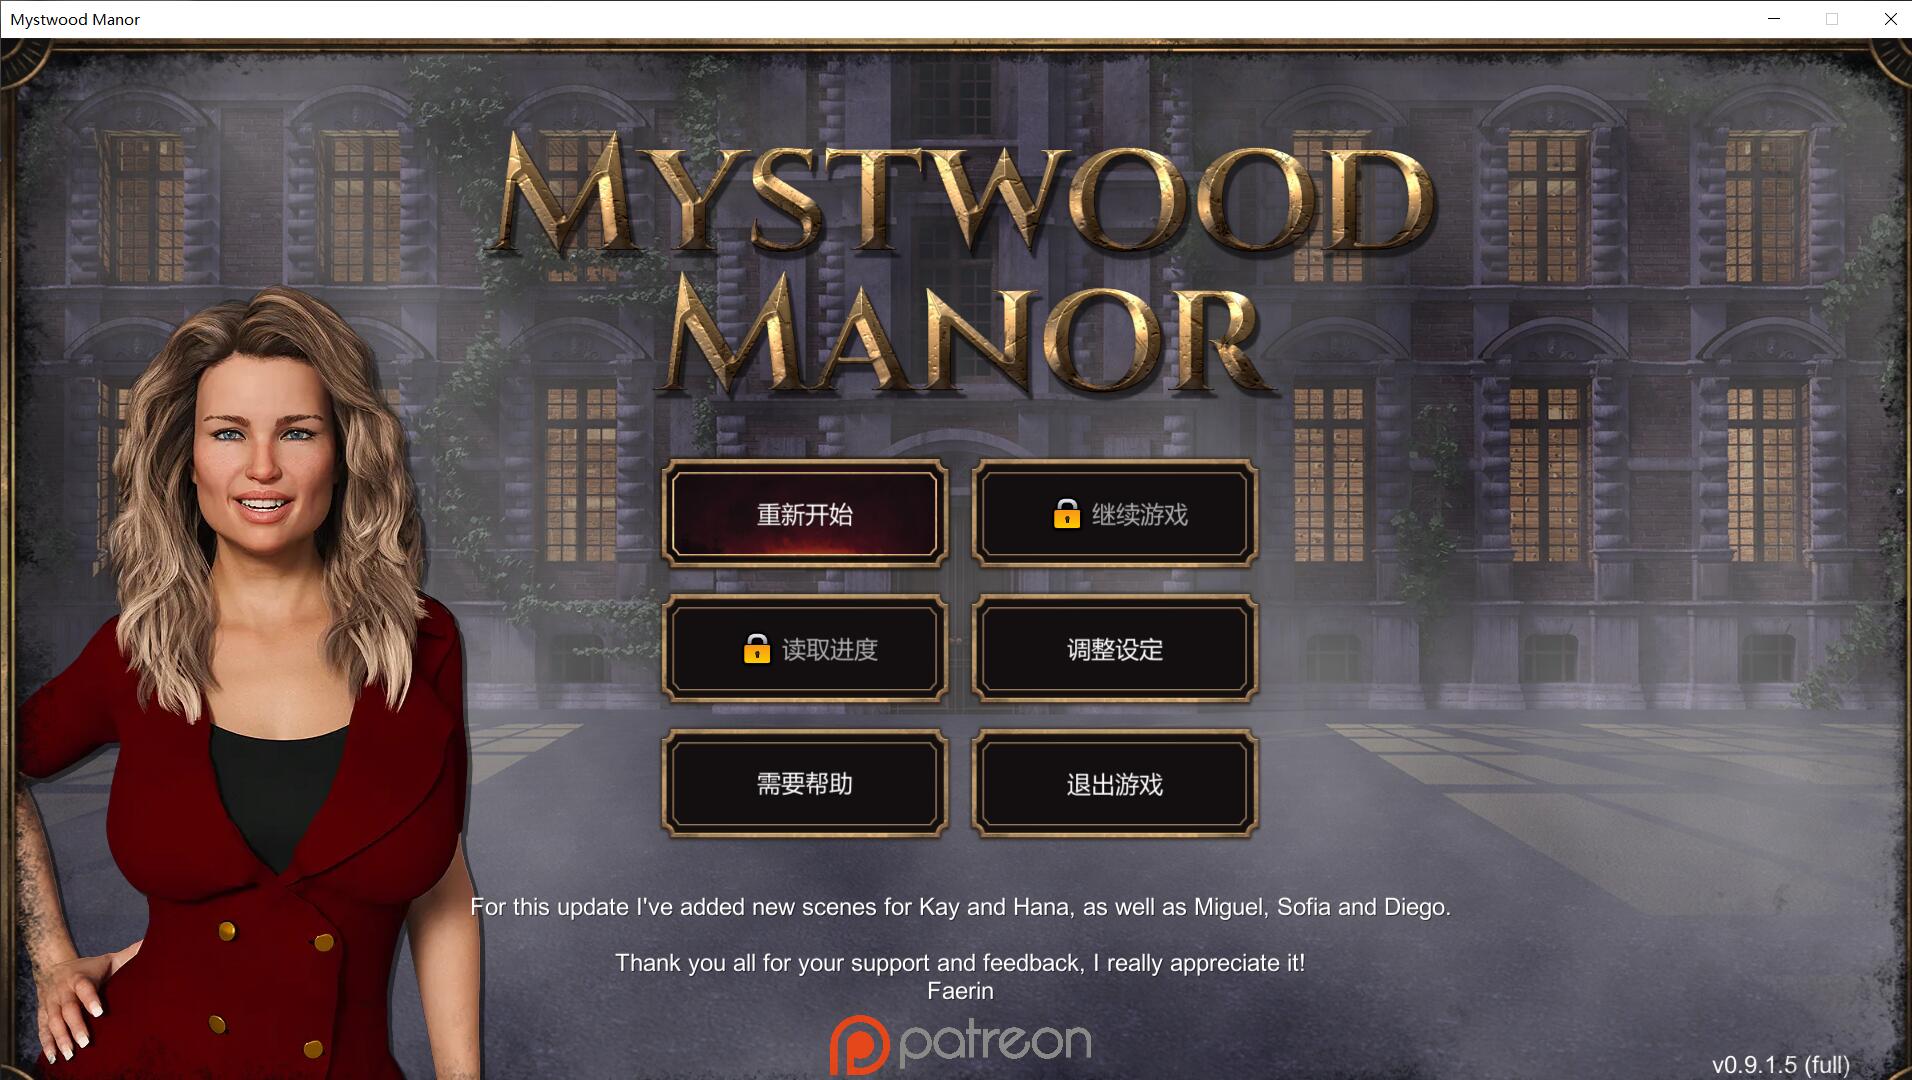 【欧美经营SLG/中文】幽灵庄园 Mystwood Manor v0.9.1.5 官方中文版 [$40赞助作弊版]【1.3G】-游戏论